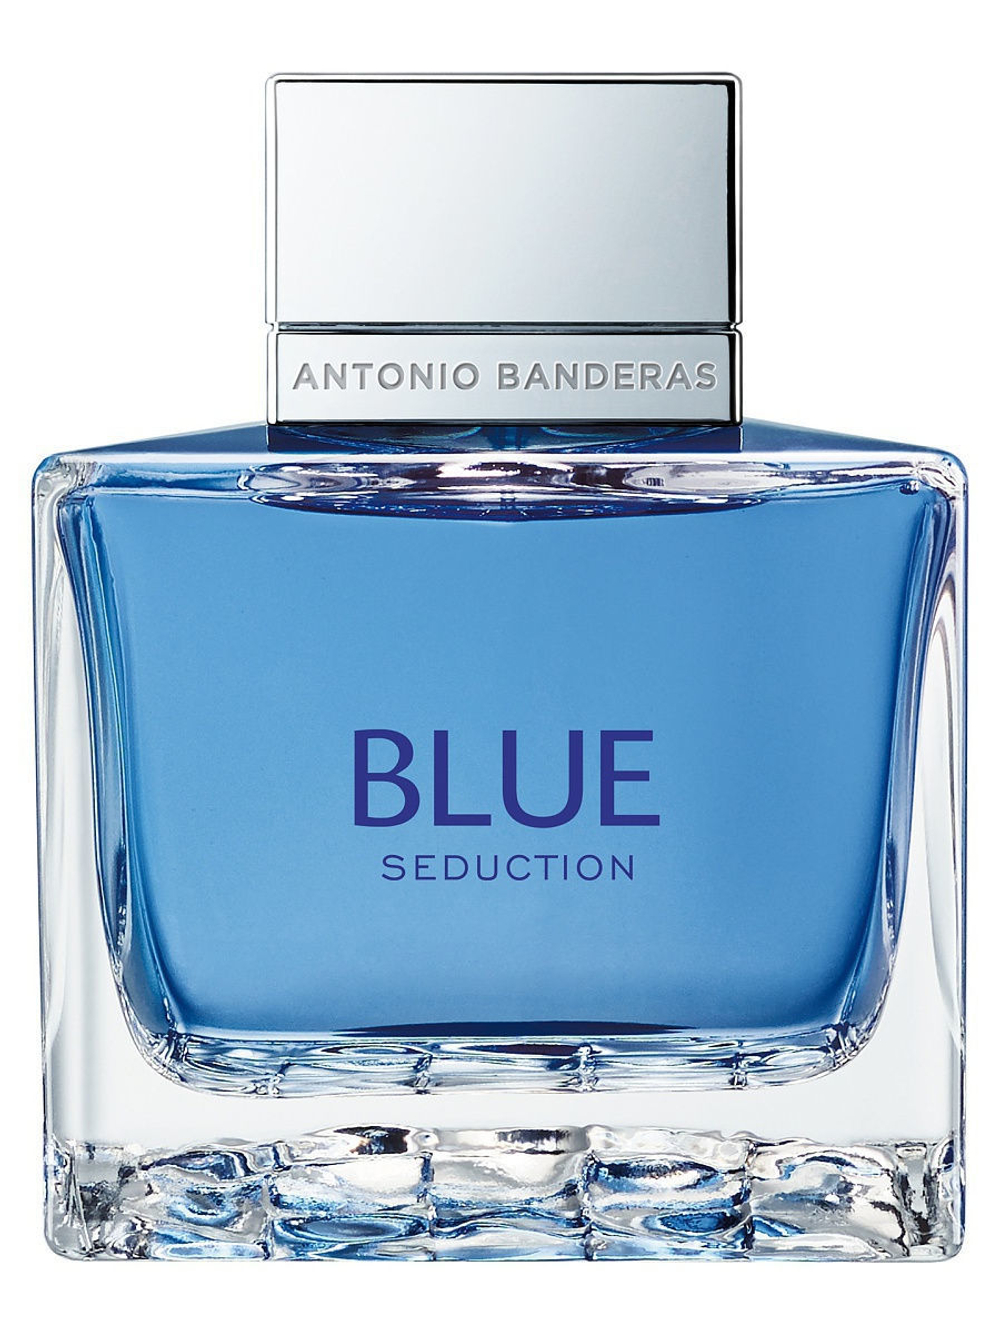 Antonio Banderas Blue Seduction